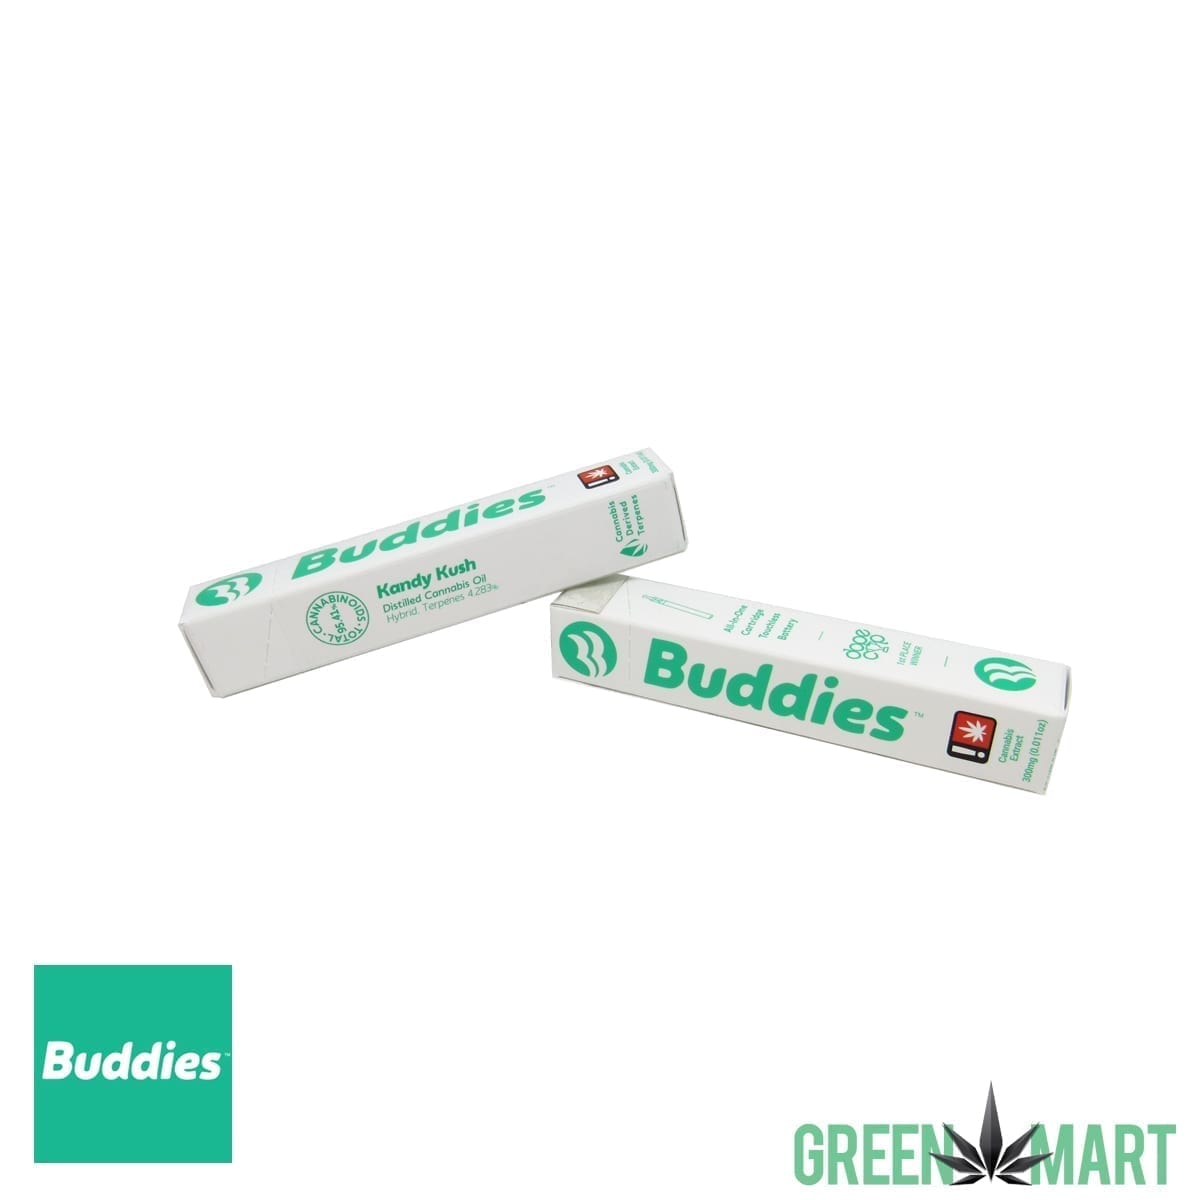 Buddies Brand Disposable Vape - Kandy Kush